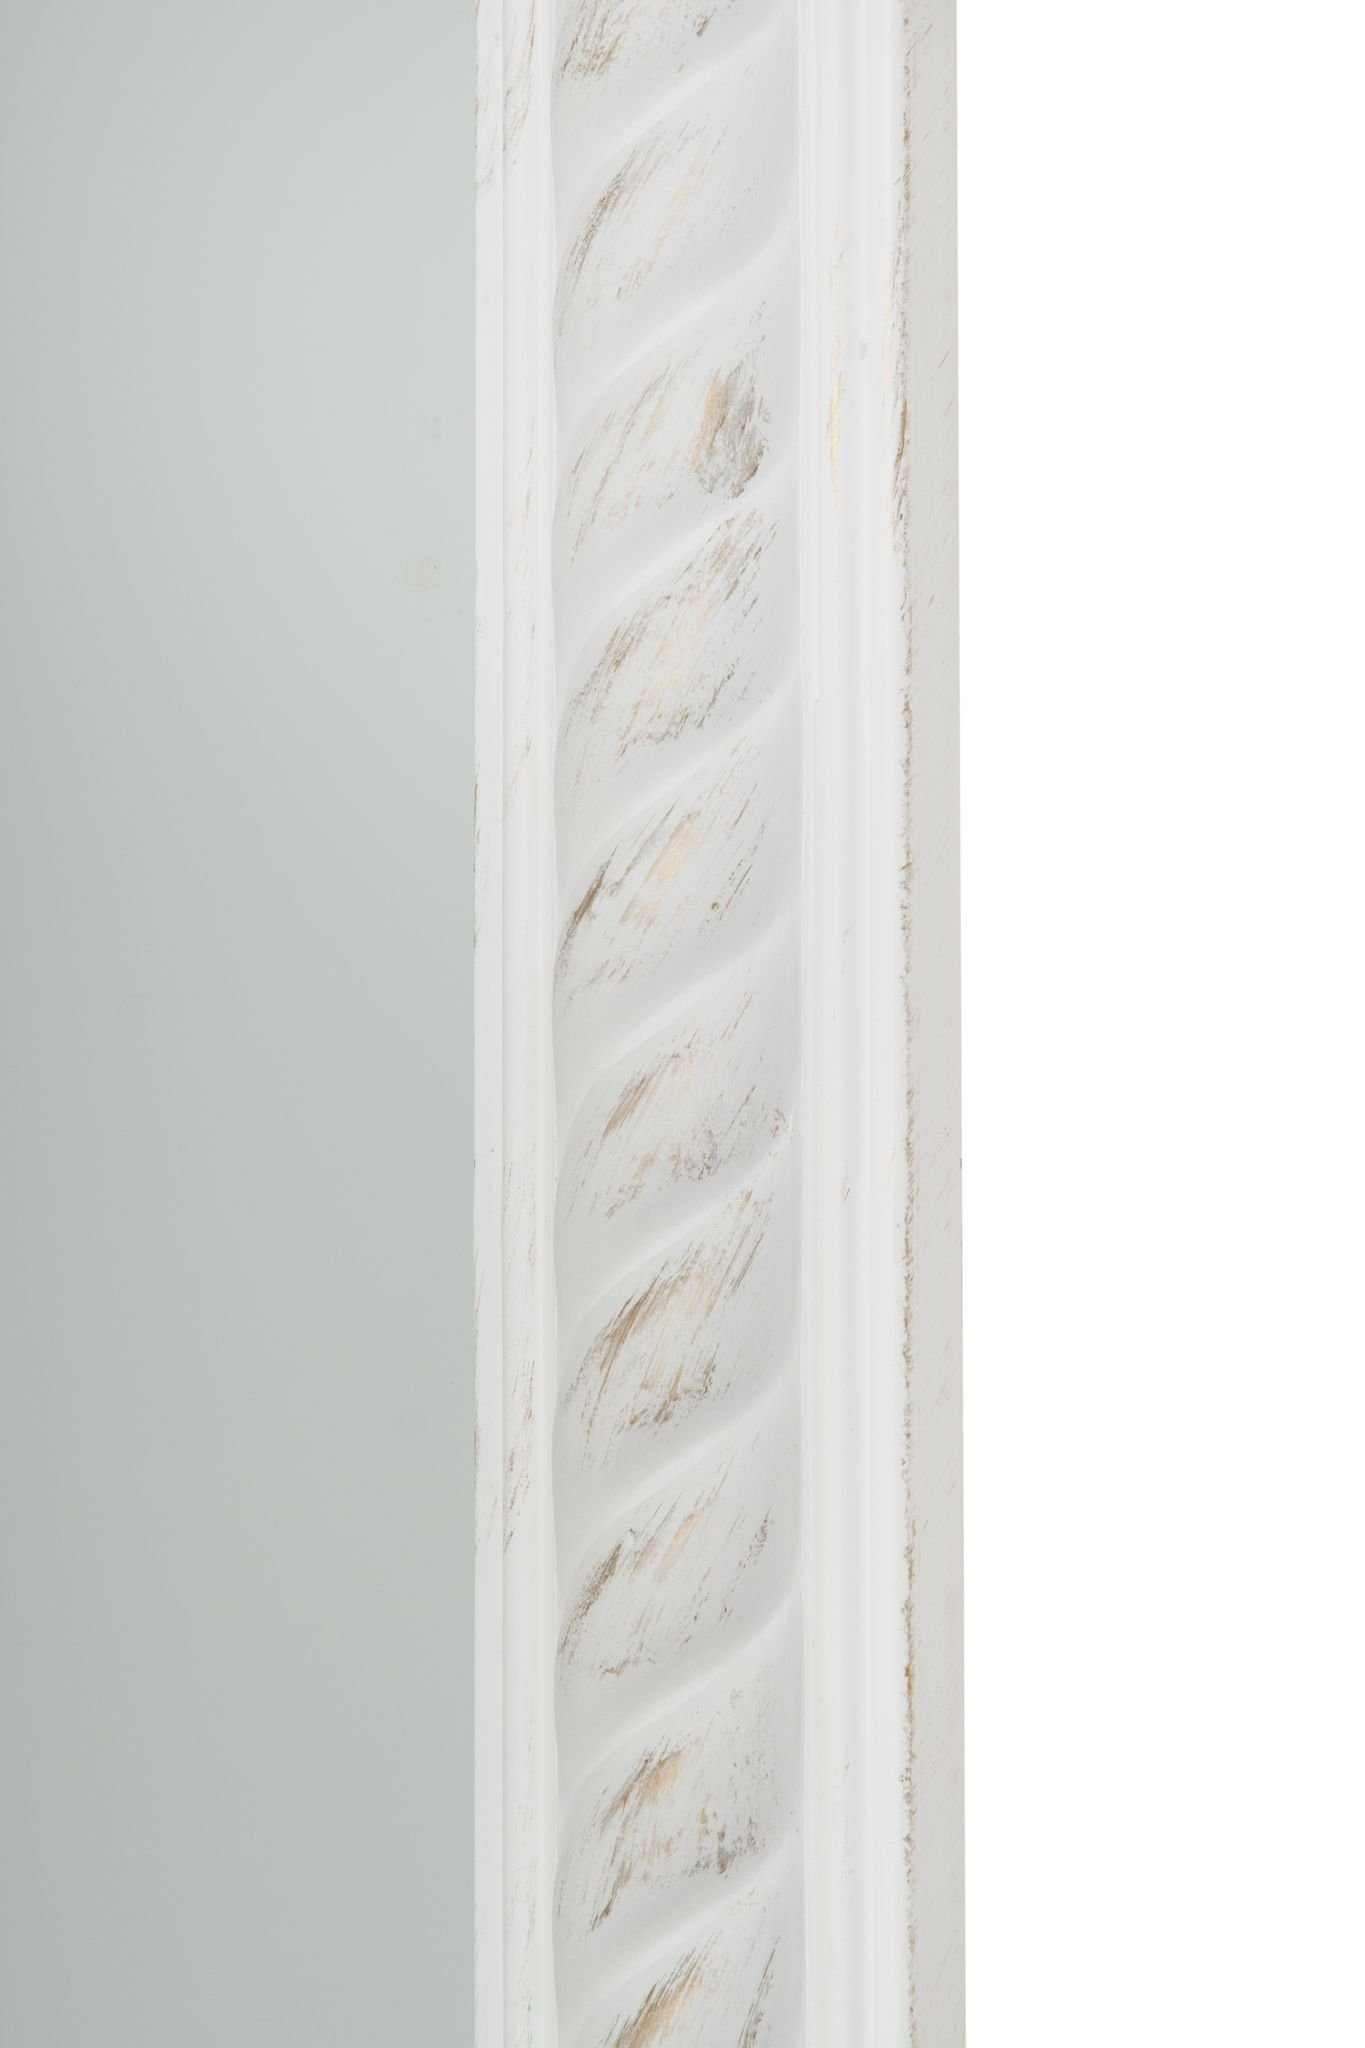 elbmöbel Wandspiegel Wandspiegel Badezimmerspiegel, Kordelrahmen | Spiegel Wandspiegel: weiß weiß cm 72x162x7 holz antik vintage weiß